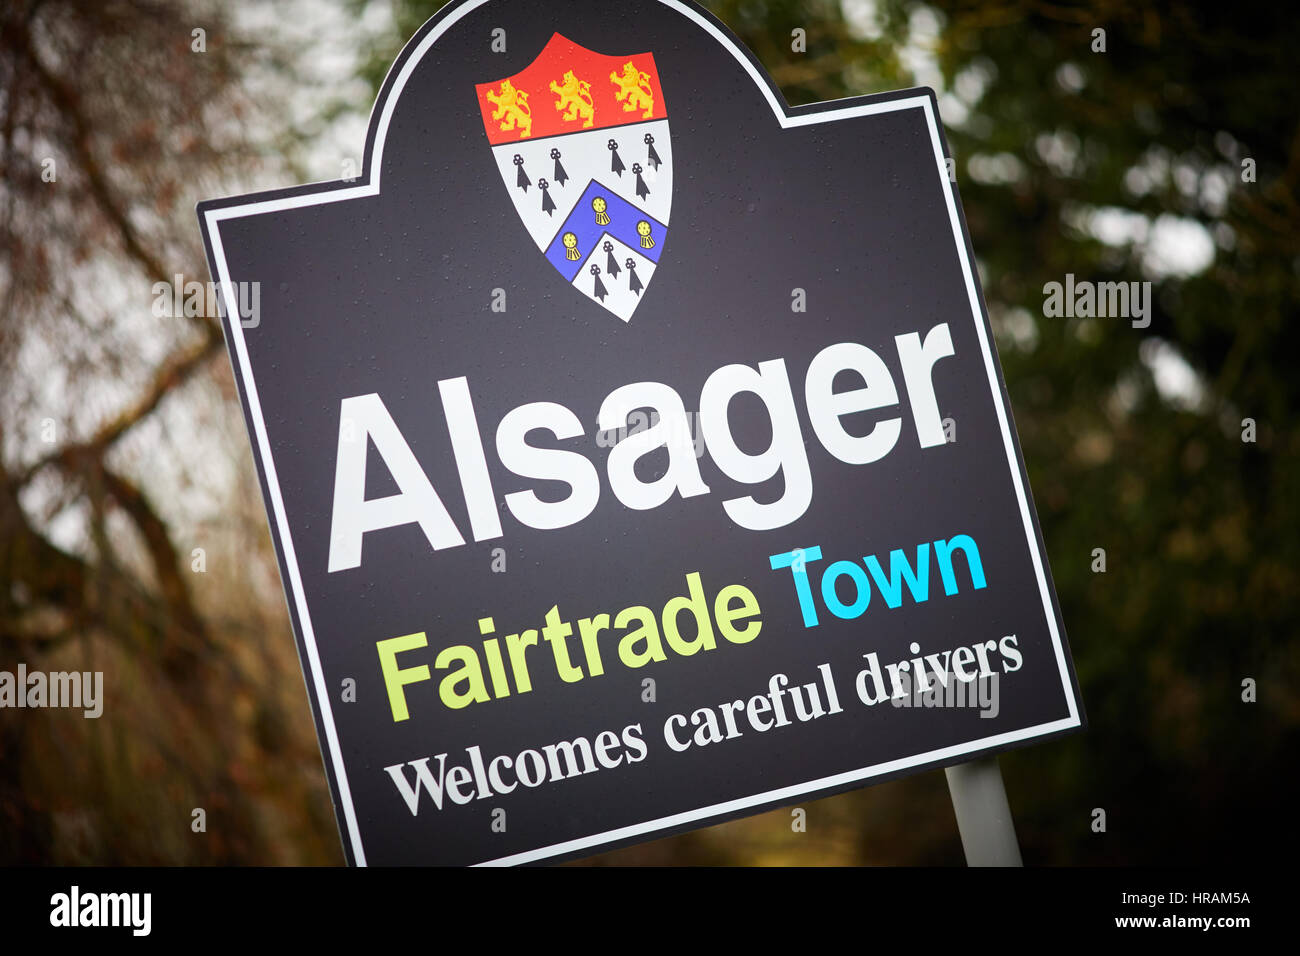 Panneau du village avec le blason se félicite de leurs conducteurs prudents-équitable en Alsager, Ville East Cheshire, Angleterre, Royaume-Uni. Banque D'Images